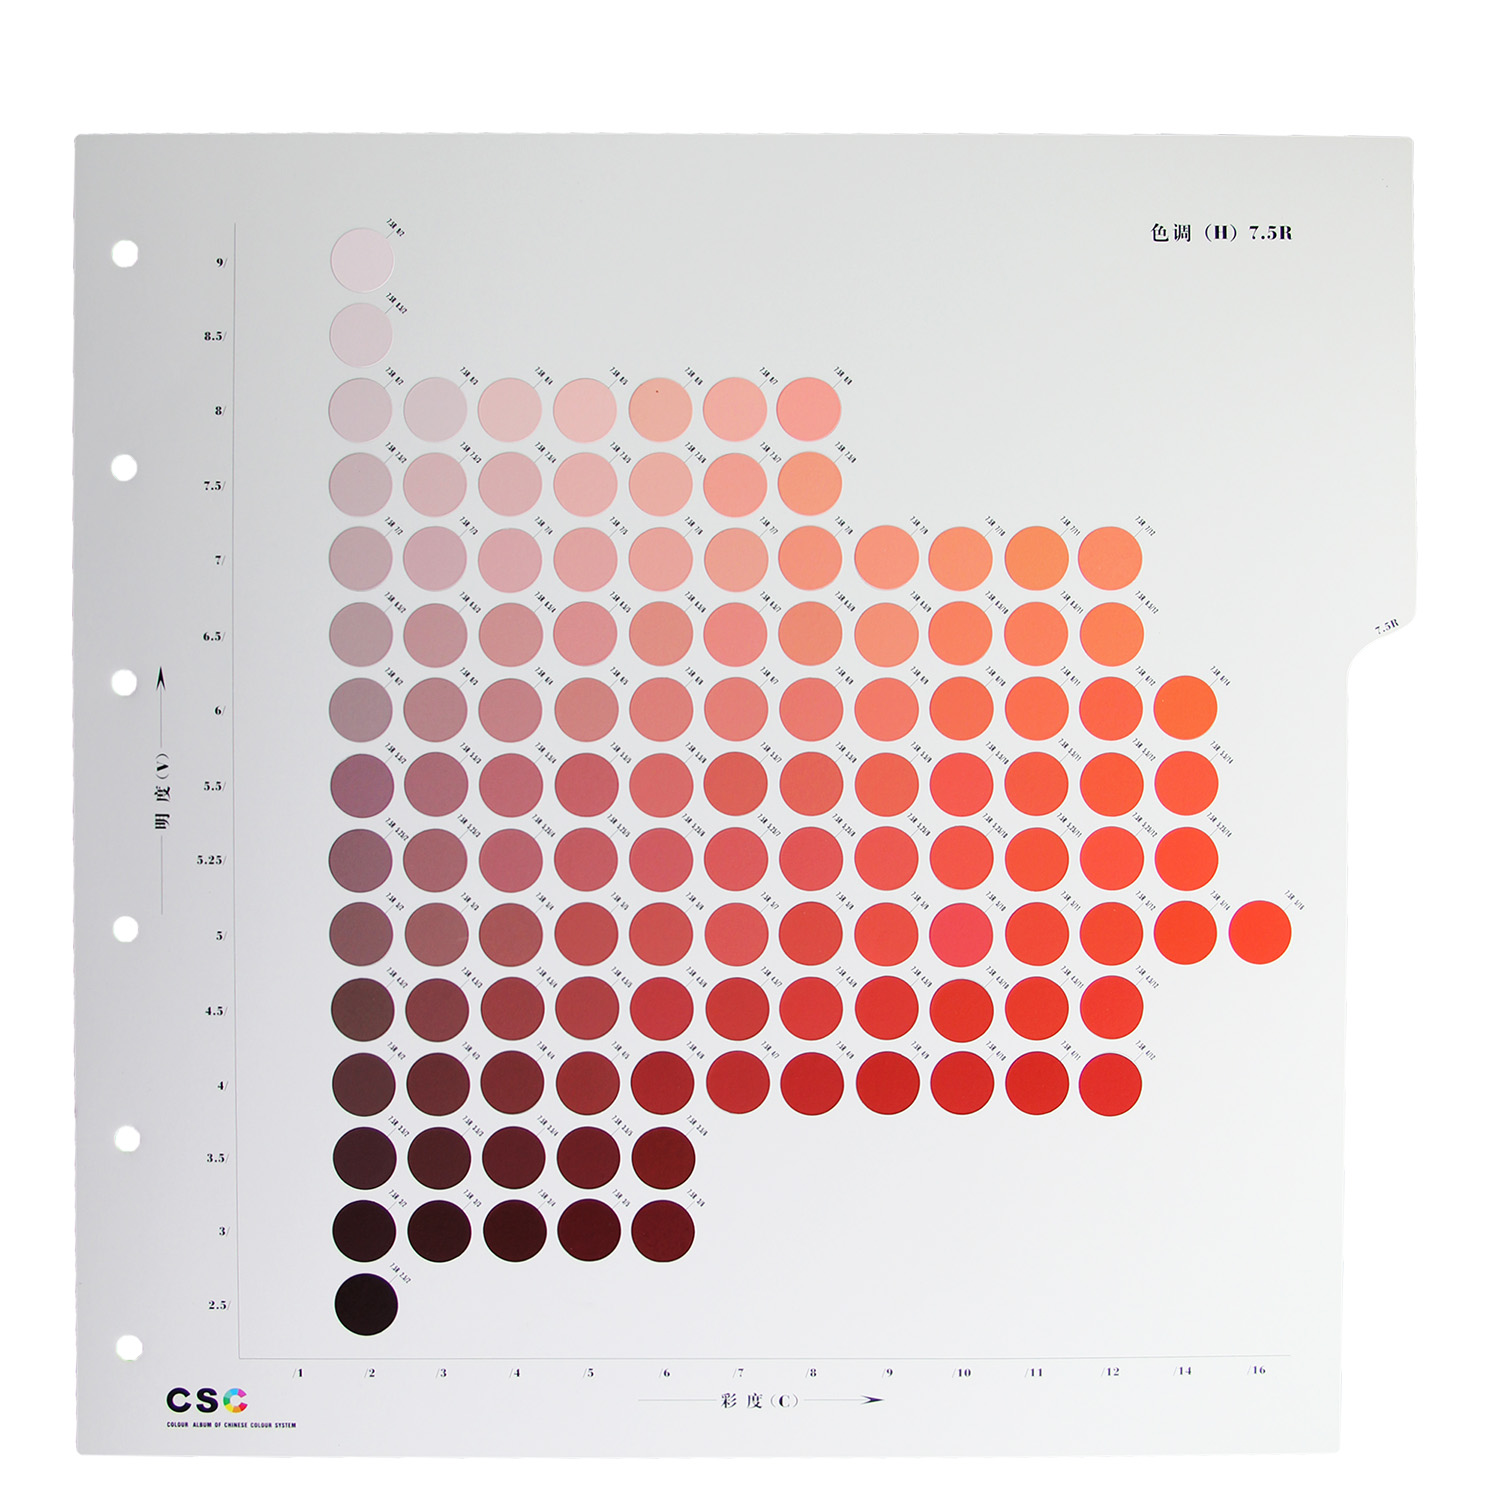 GSB 中国颜色体系标准样册(5139色)